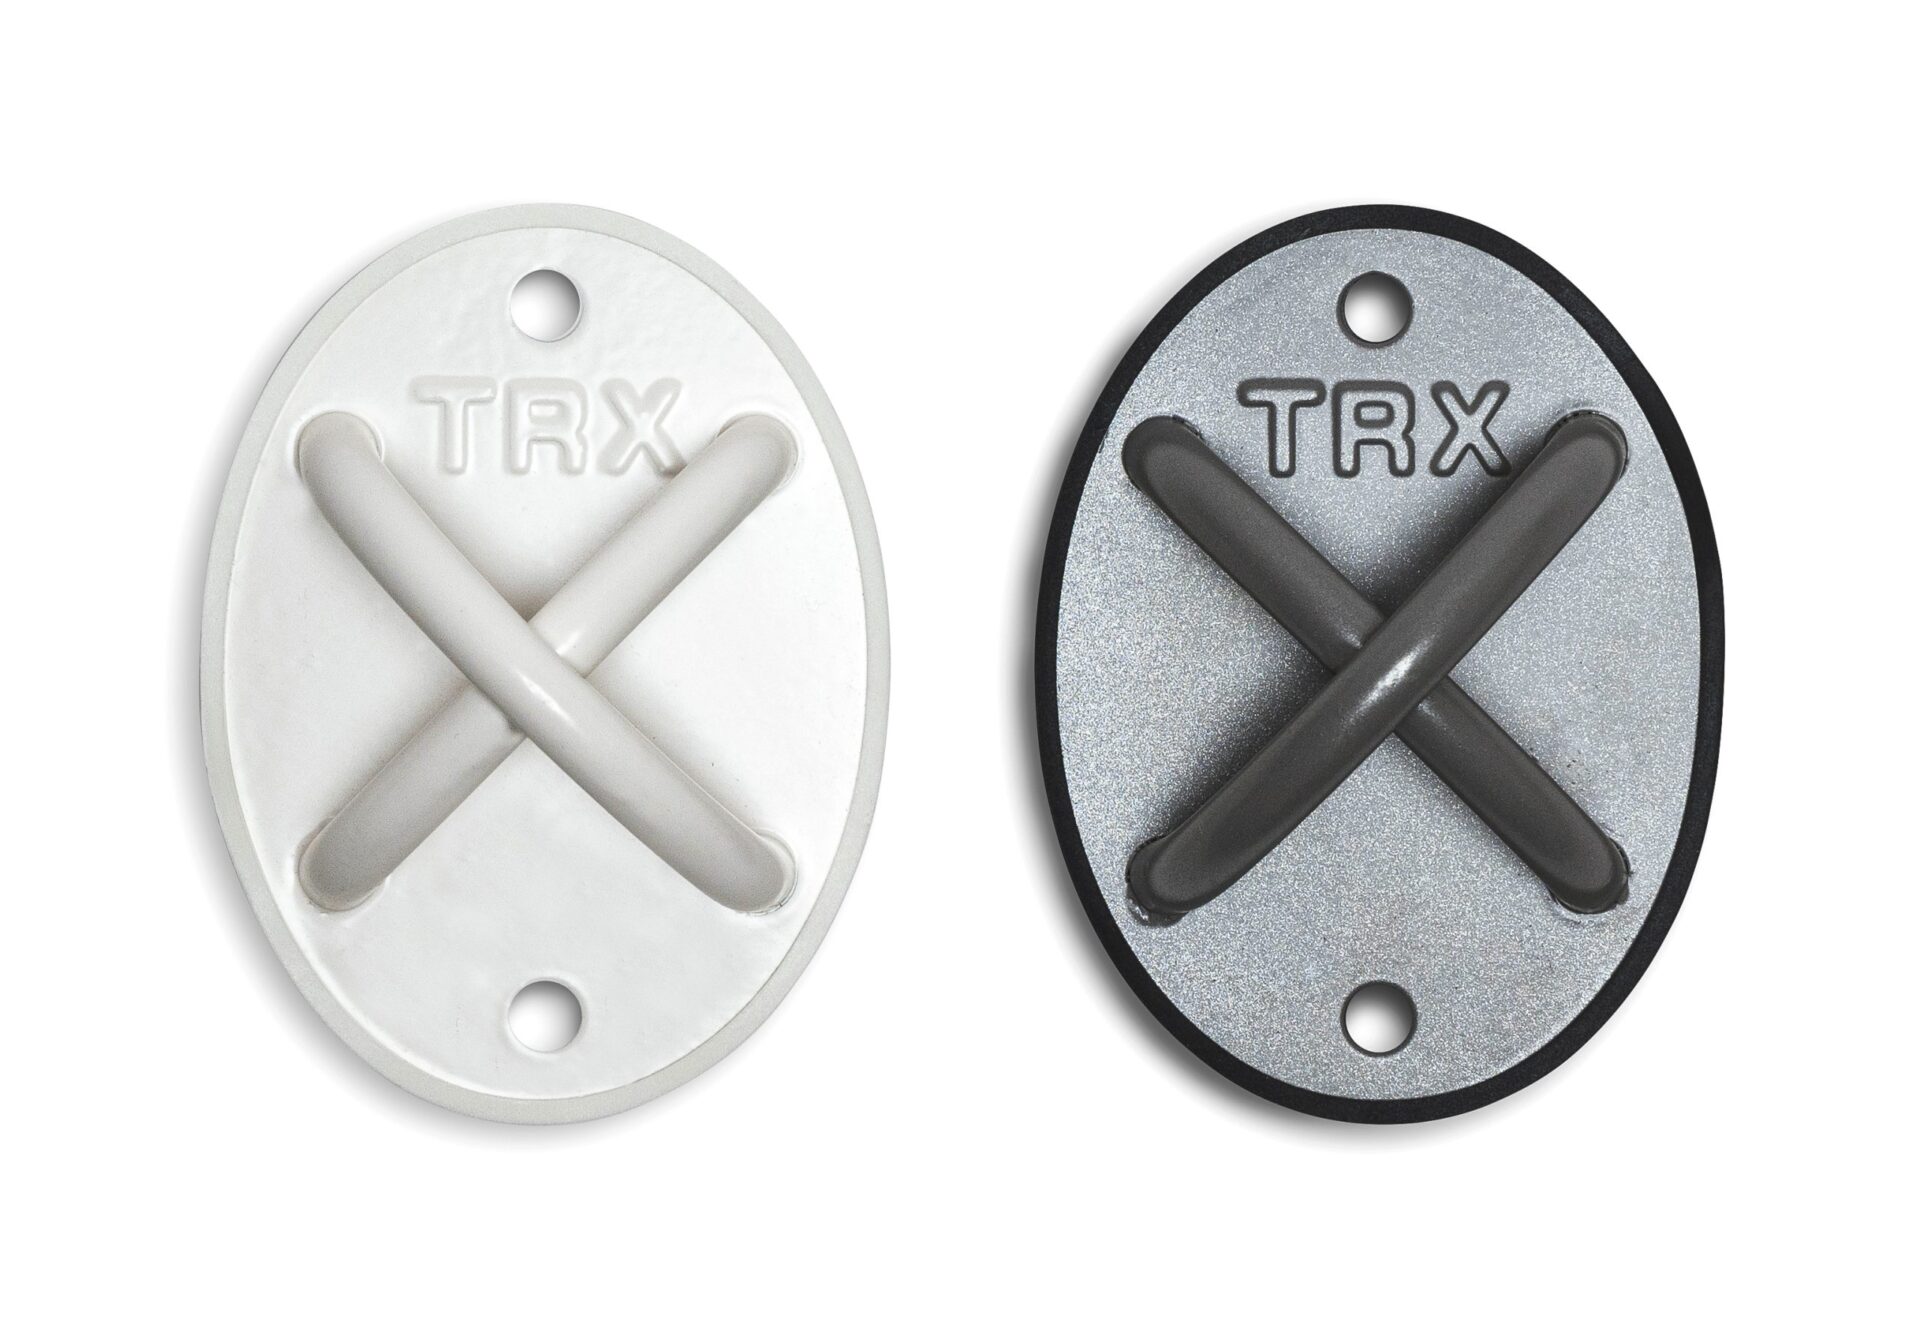 TRX Spain - La página oficial de TRX® en España